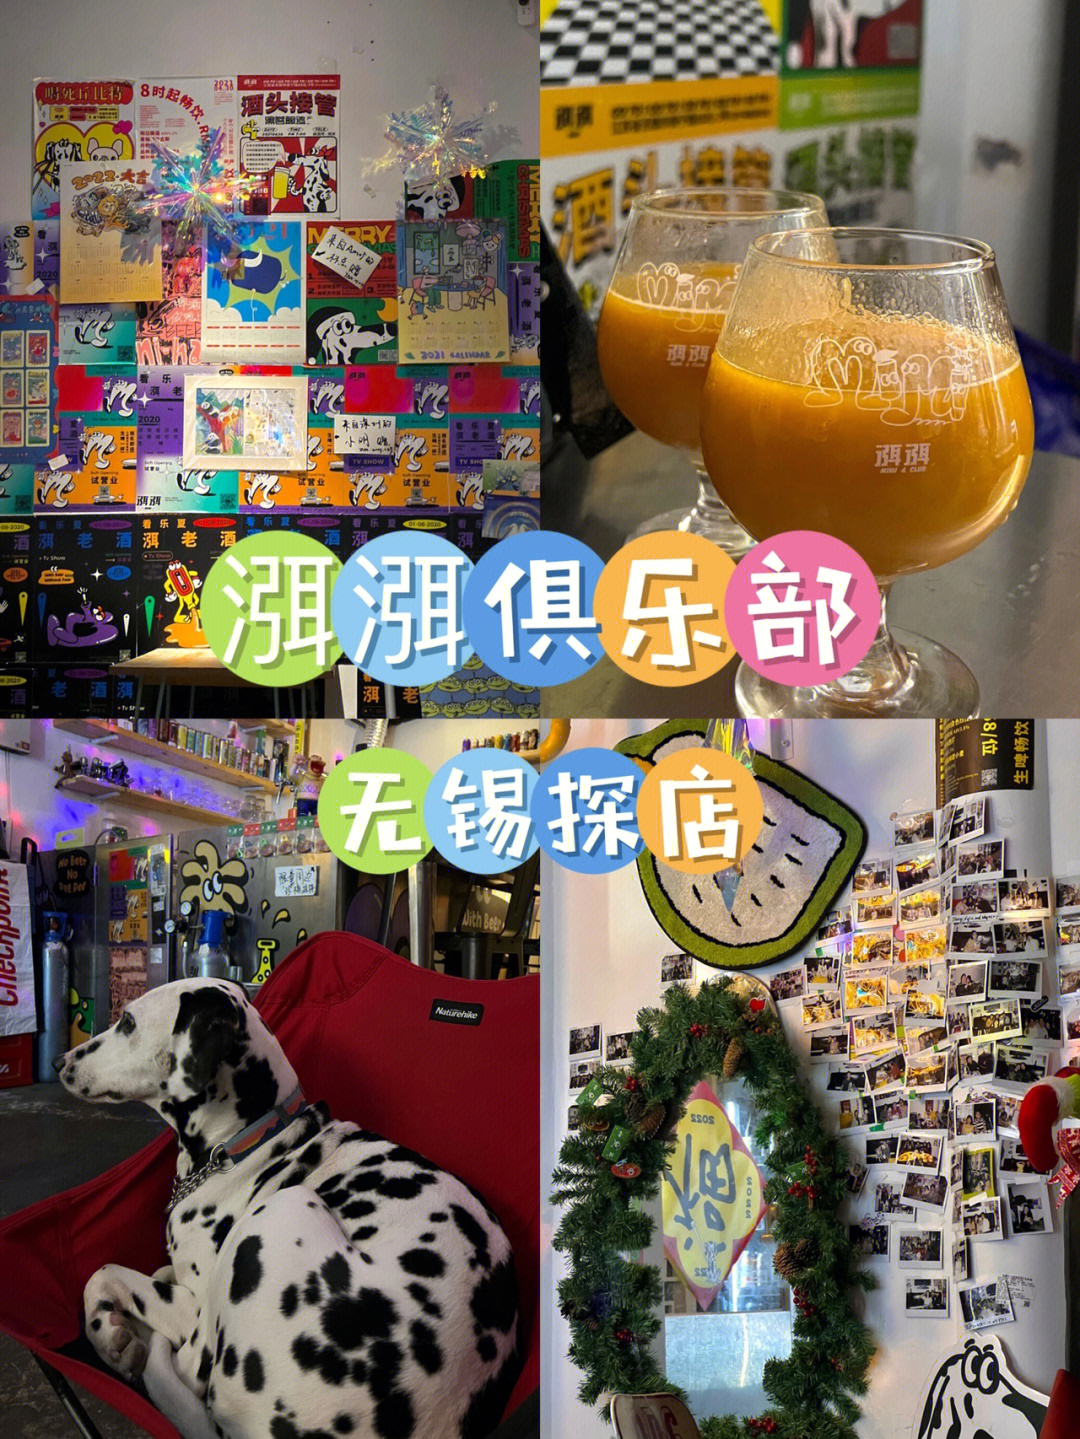 晋城mimi酒吧图片